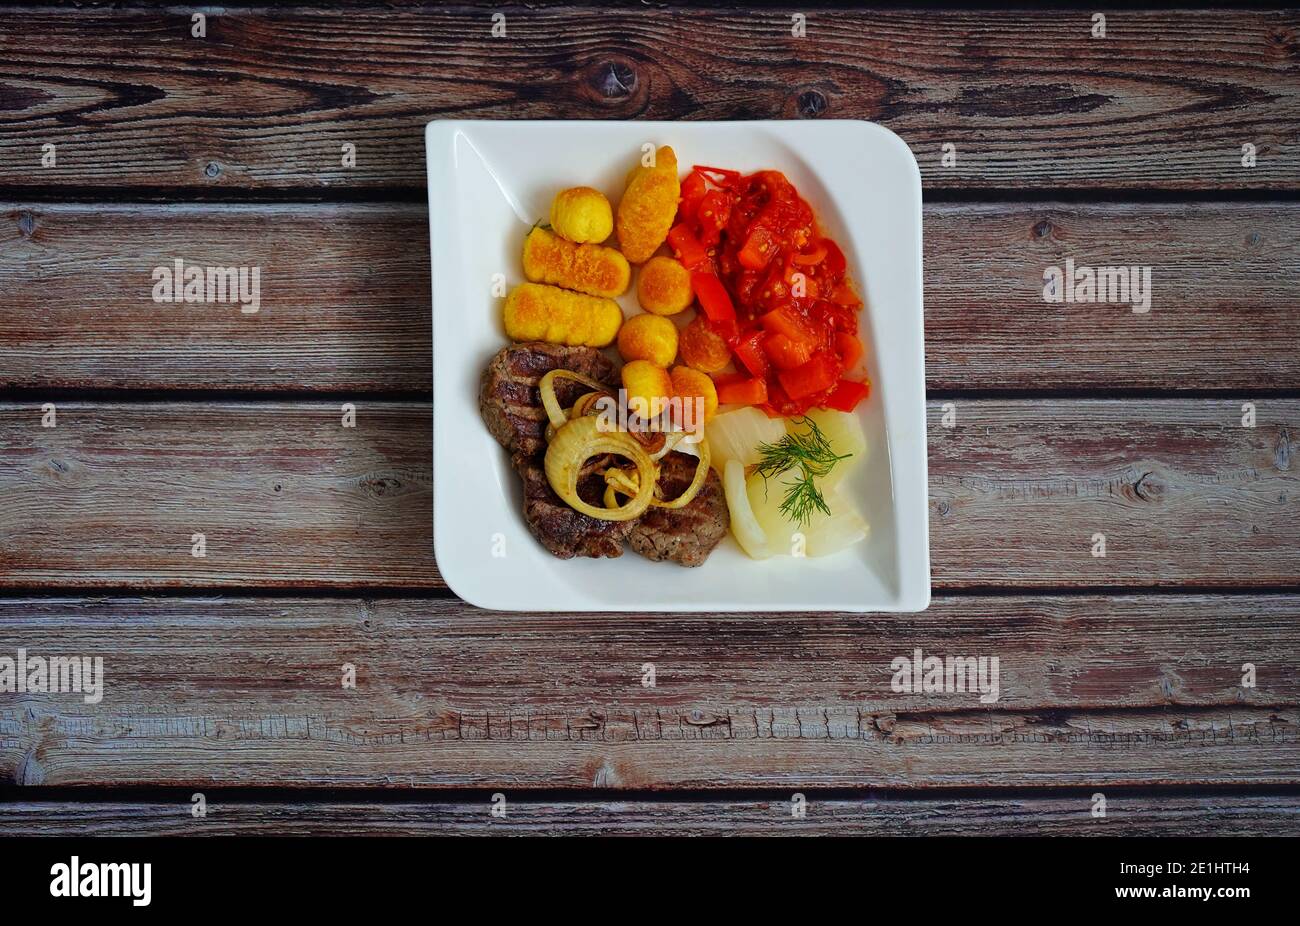 Steak de bœuf avec rondelles d'oignon, croquettes et légumes (fenouil et paprika) sur une assiette carrée blanche avec fond en bois foncé. Cuisine allemande maison. Banque D'Images